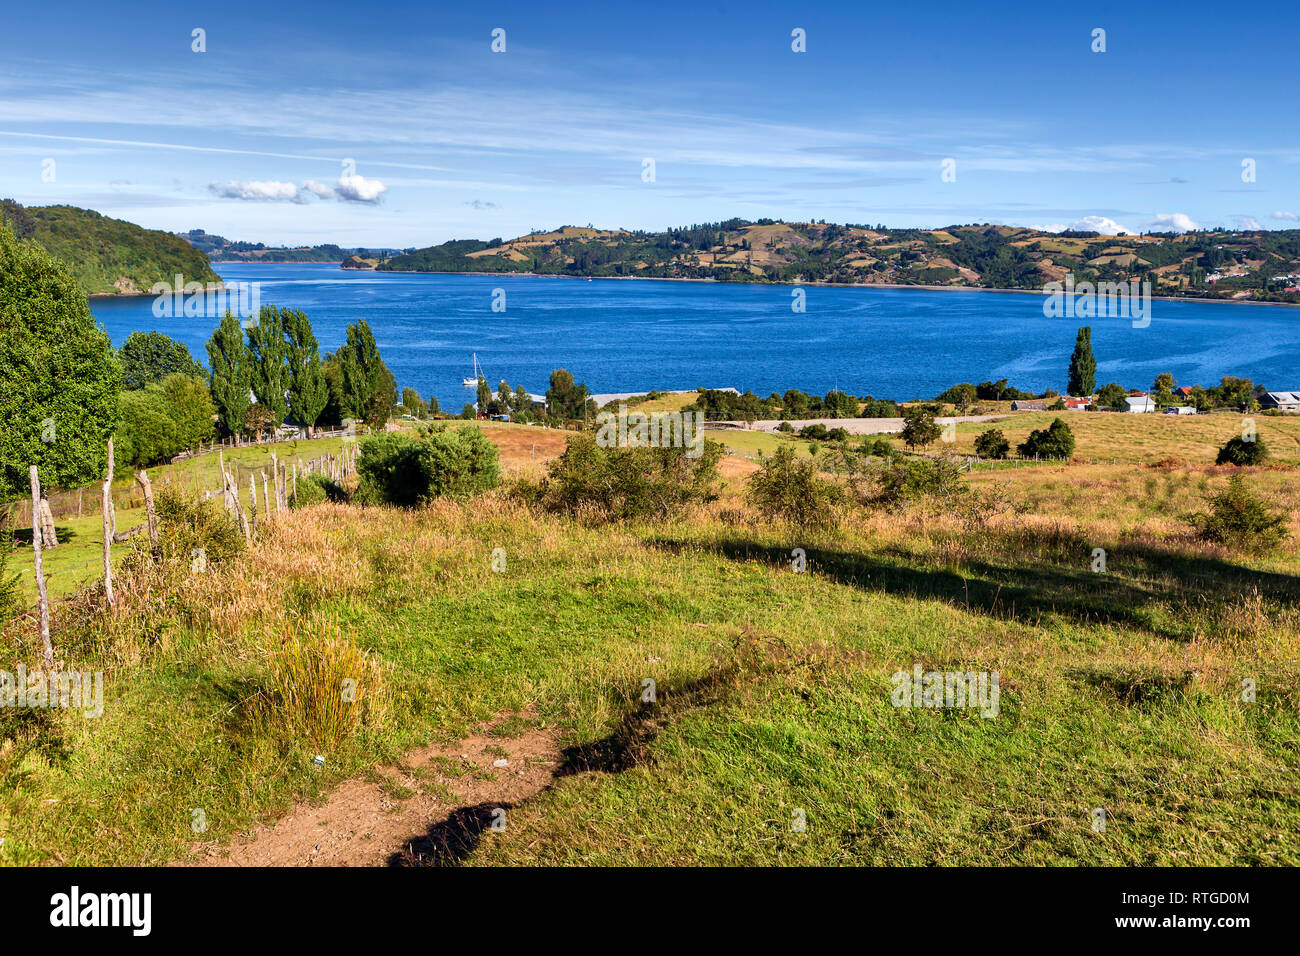 Sea of Chiloe coast, Quinchao, Chiloe island, Los Lagos region, Chile Stock Photo